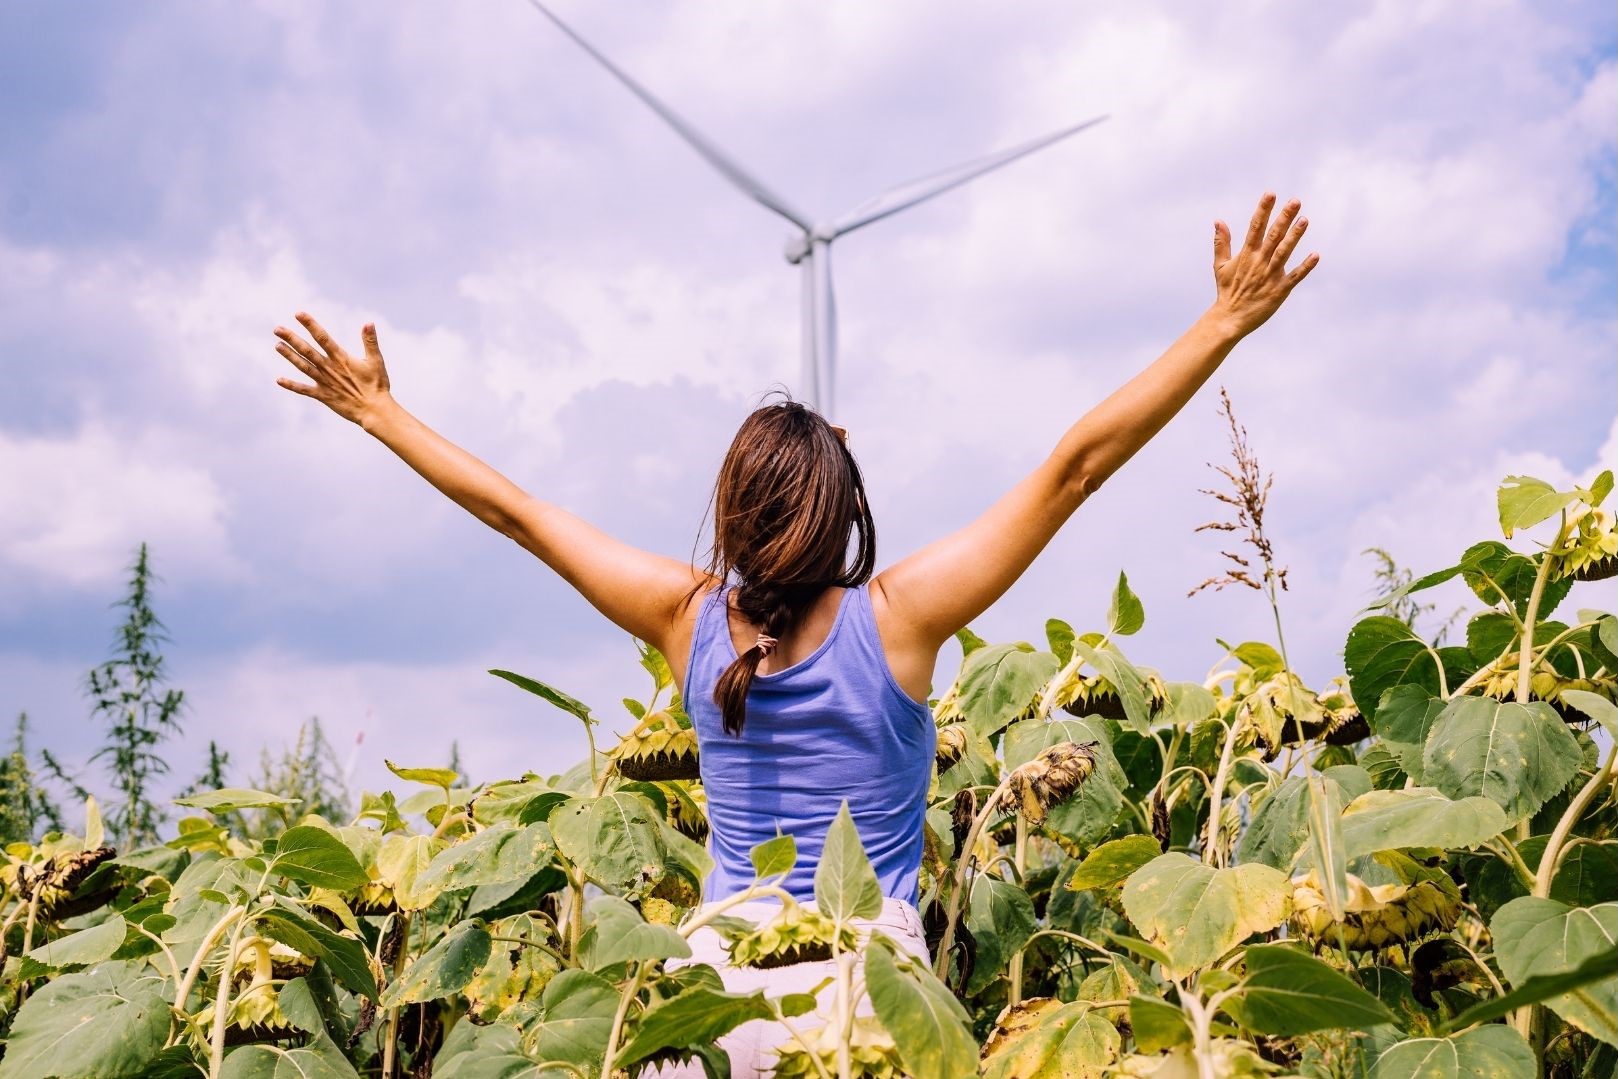 Eine Frau steht mit dem Rücken zur Kamera in einem Feld mit hohen grünen Pflanzen. Die hat die Arme nach oben rechts und links ausgestreckt. In der Mitte des Bildes ist im Hintergrund eine Windkraftanlage zu sehen.